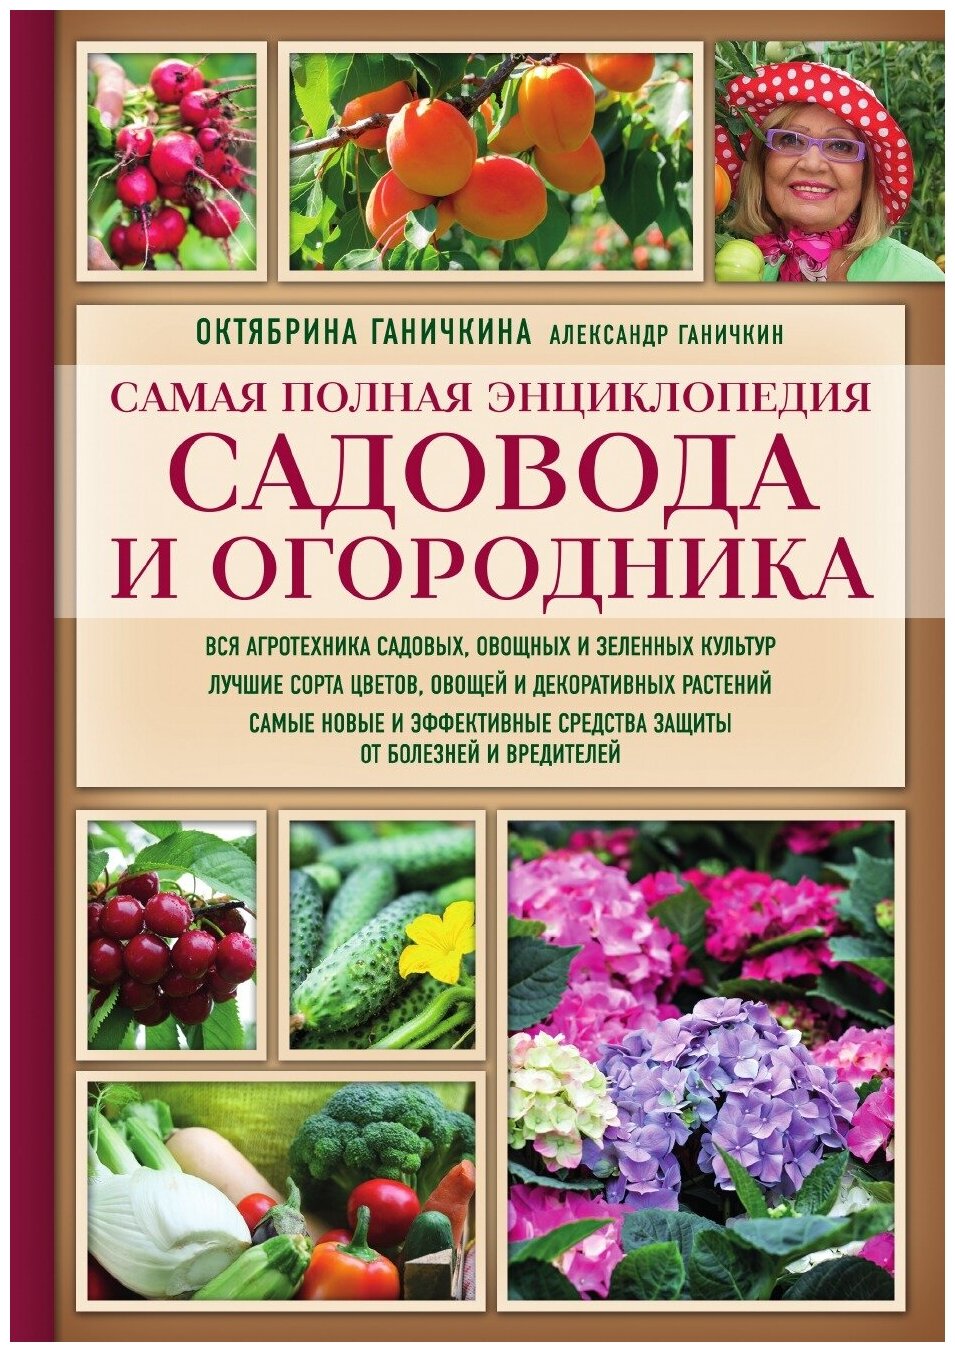 Самая полная энциклопедия садовода и огородника (красное оформление, мягкая обложка)